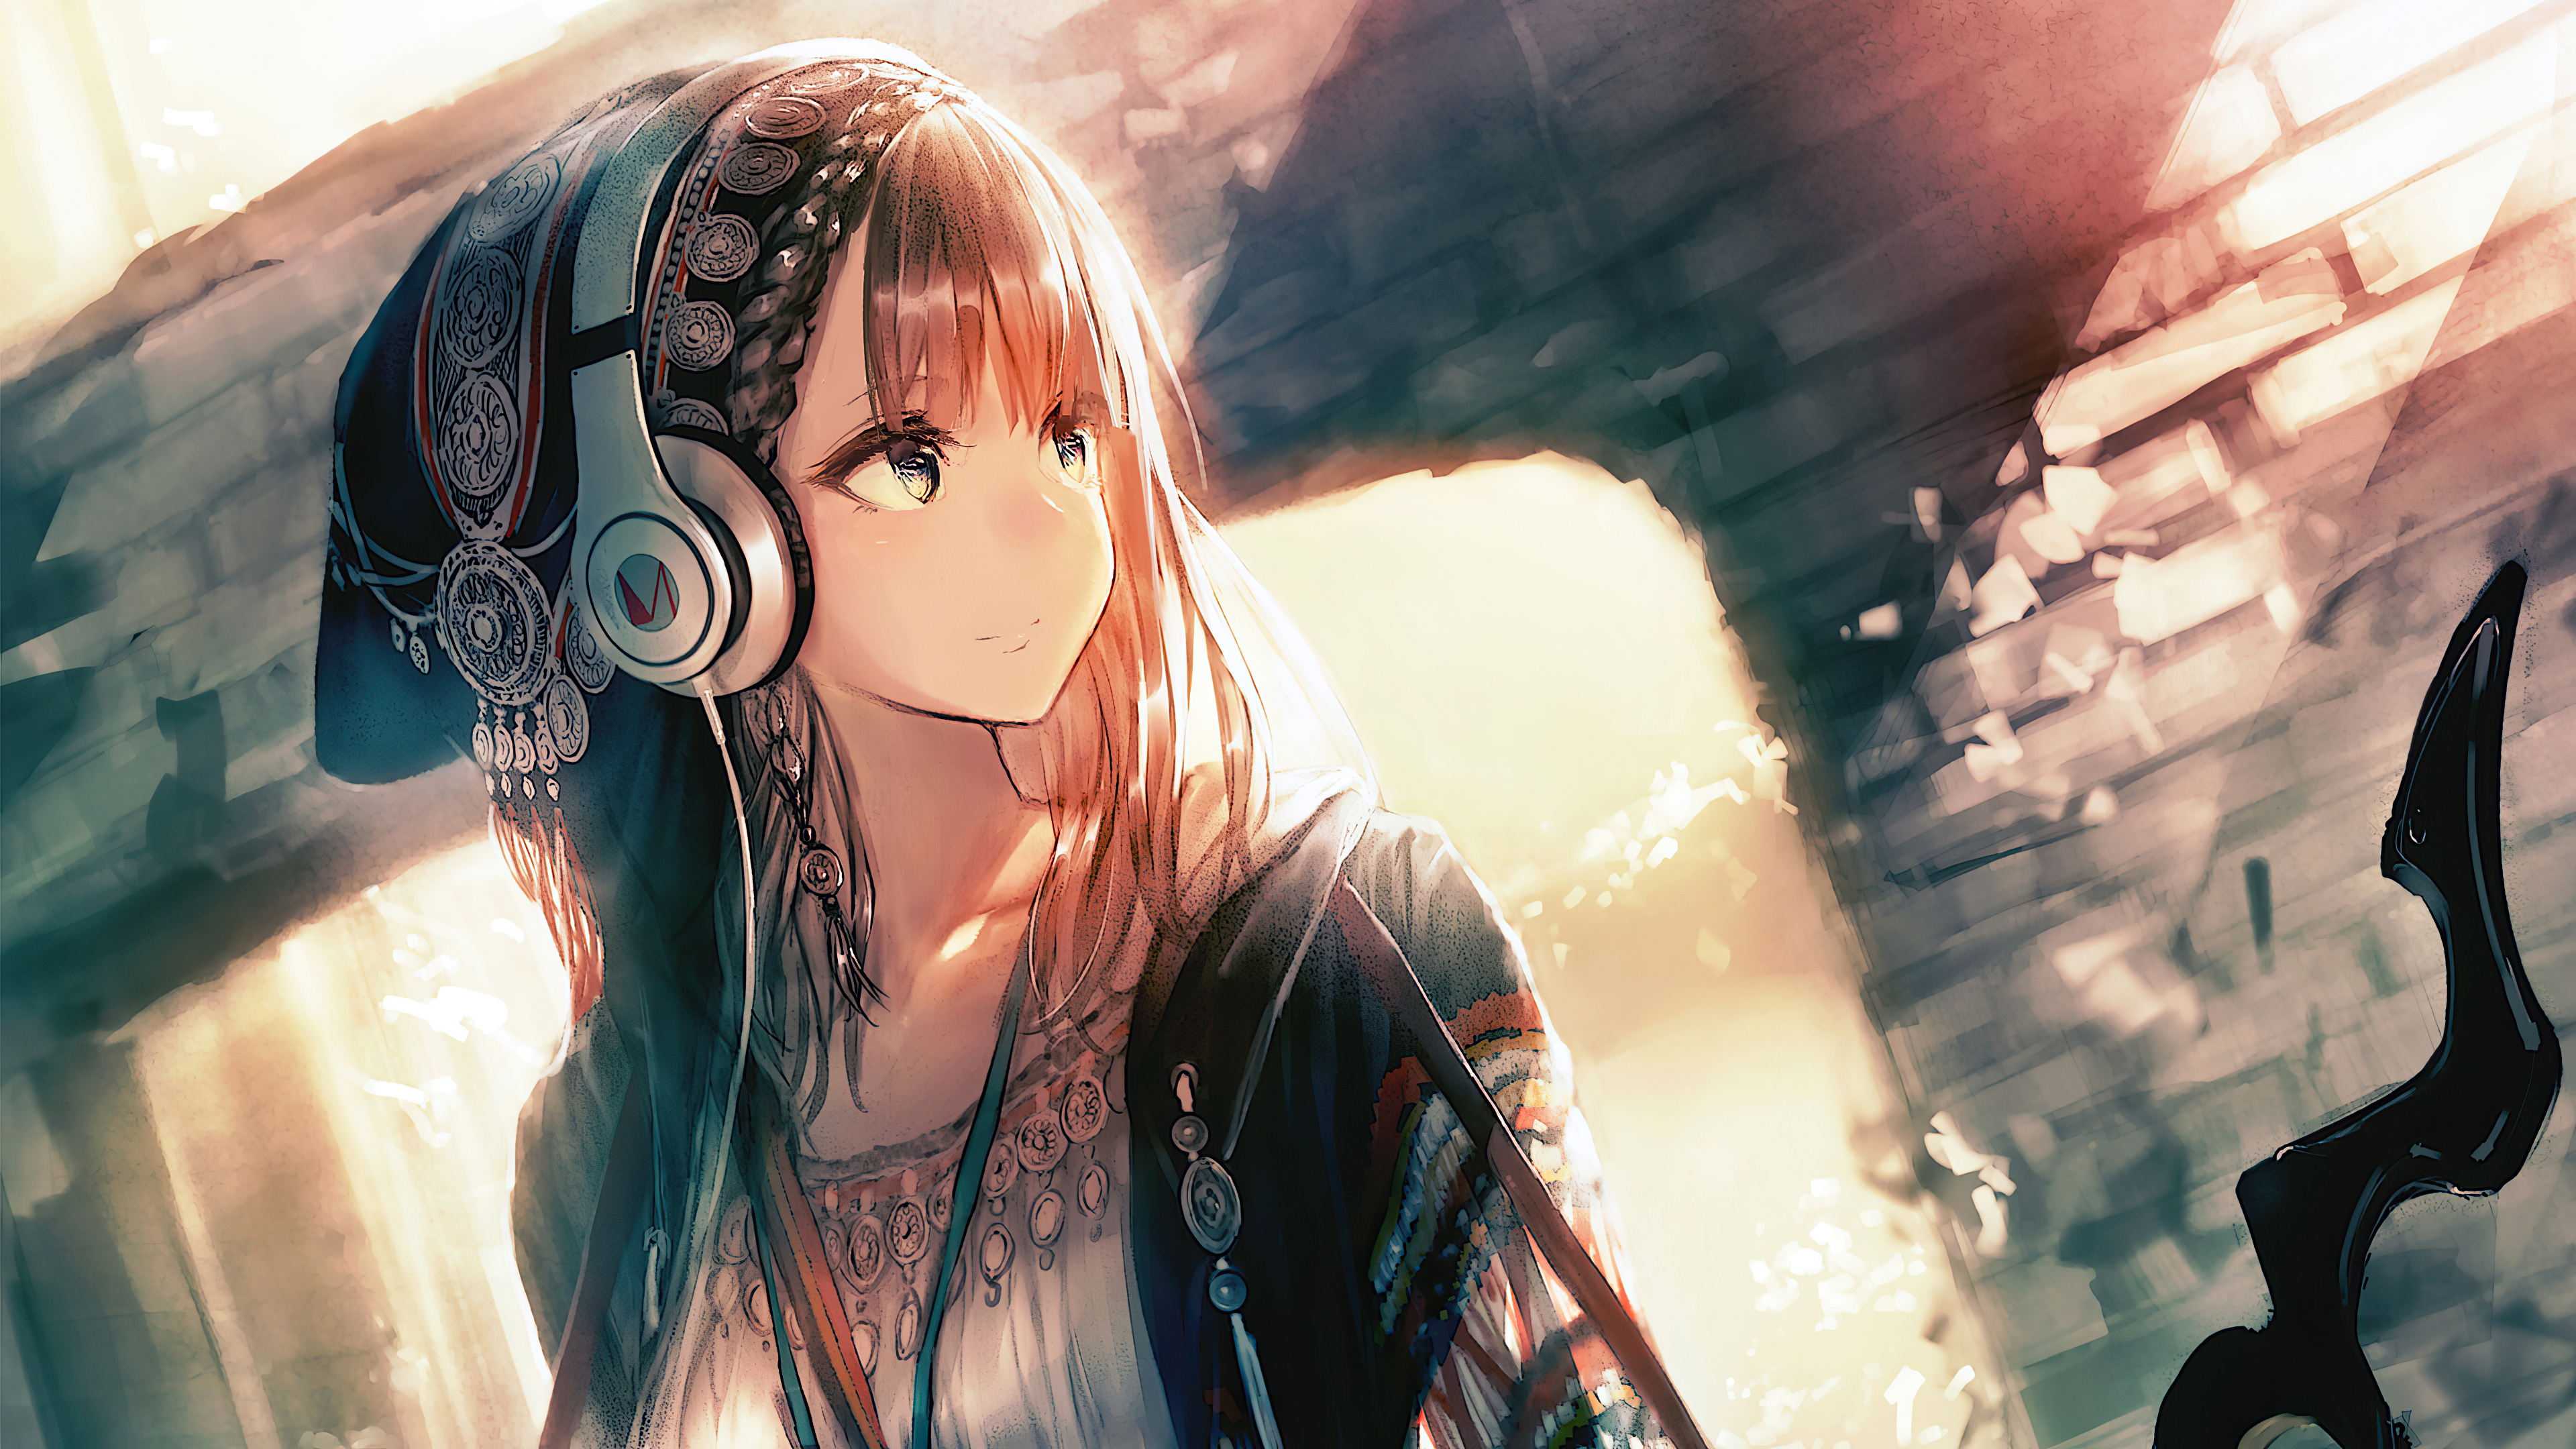 Anime Girl Wallpaper With Headphones gambar ke 6